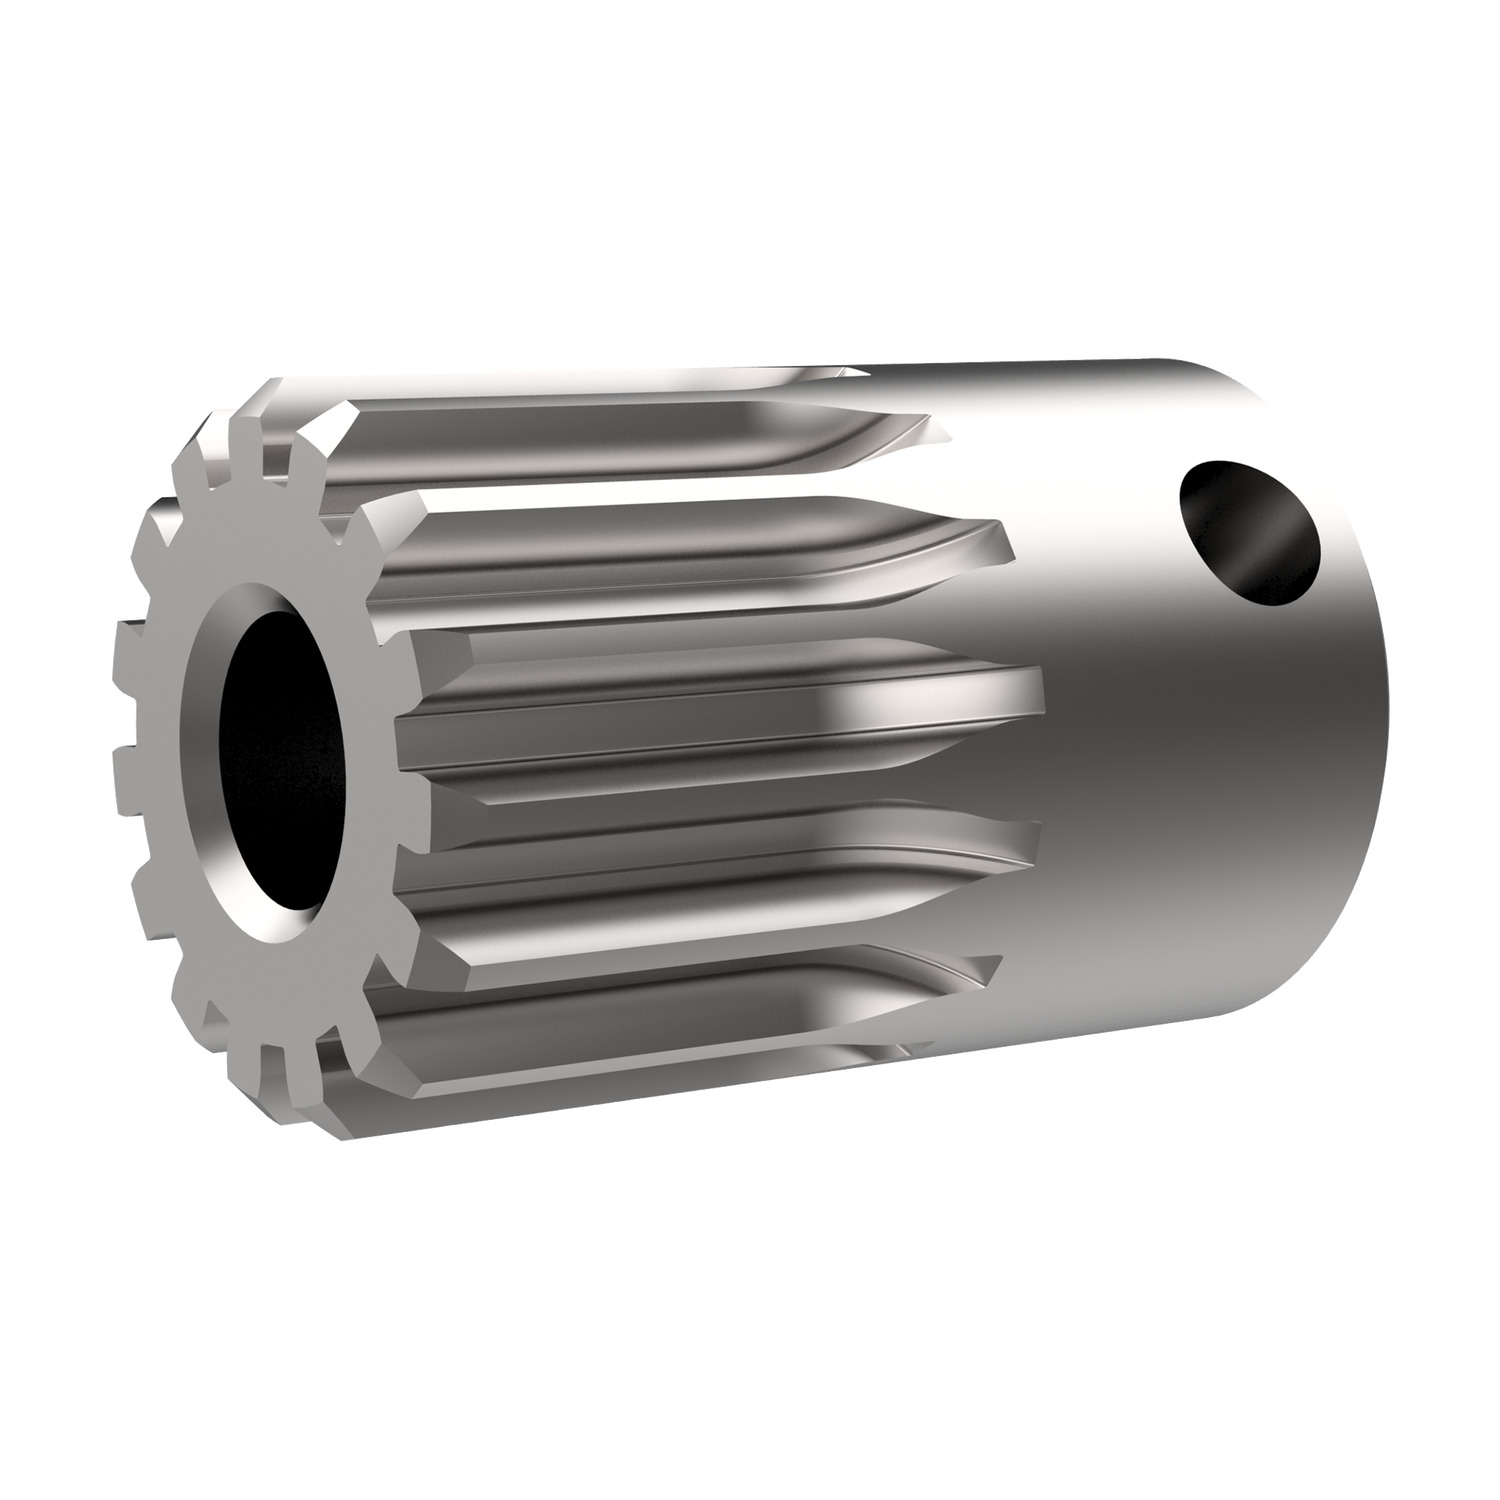 Product R5128, Spur Gears - Module 0.75 - Steel carbon steel - 14-15 teeth / 